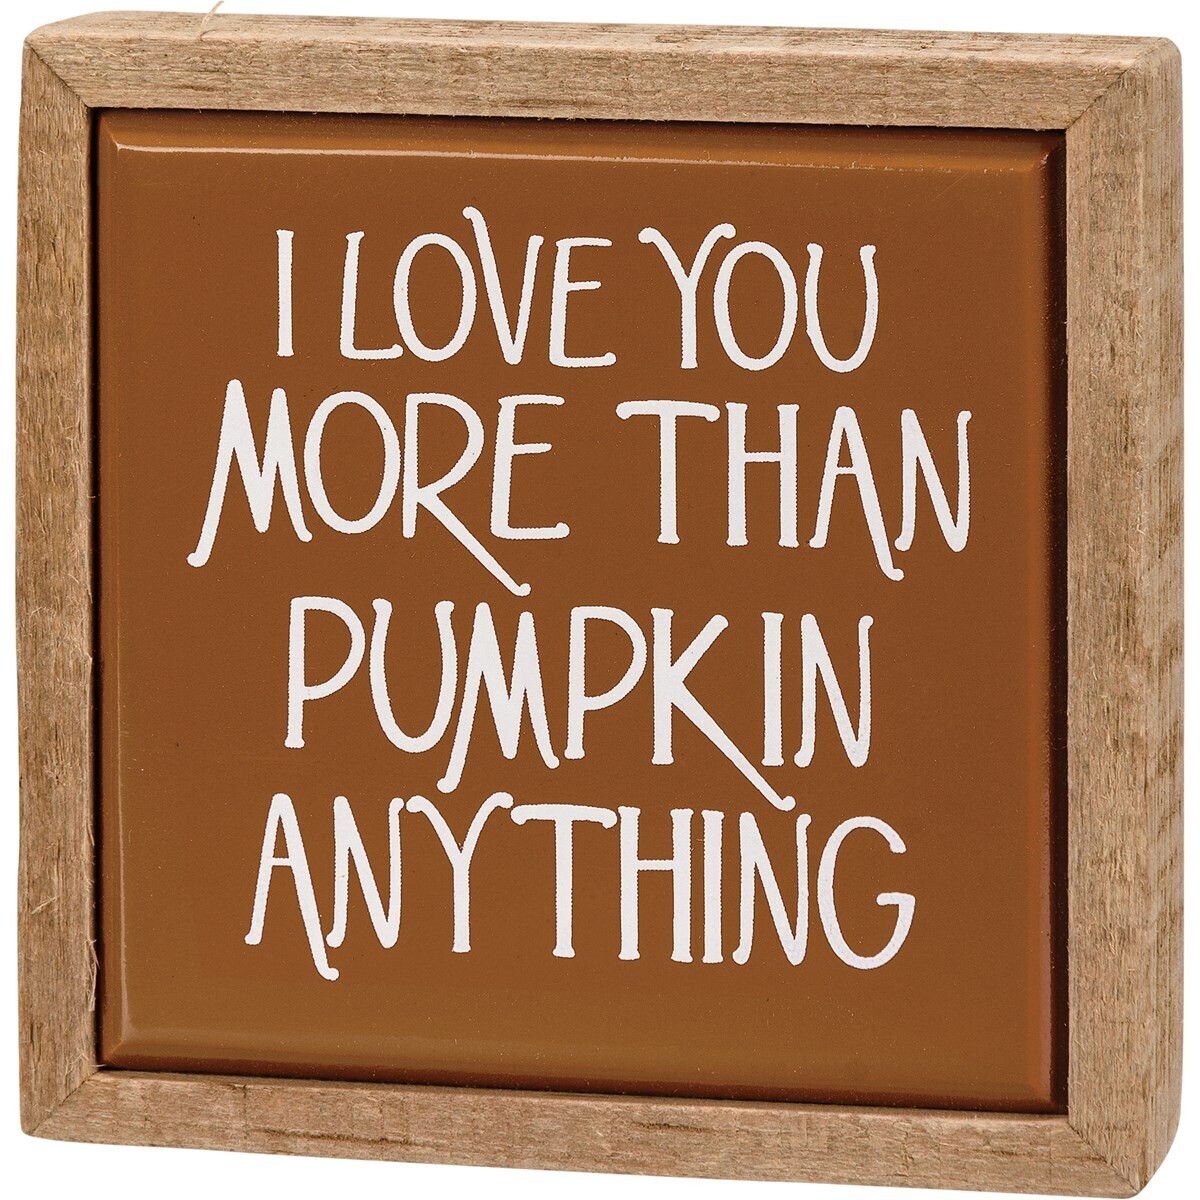 Pumpkin Anything Box Sign